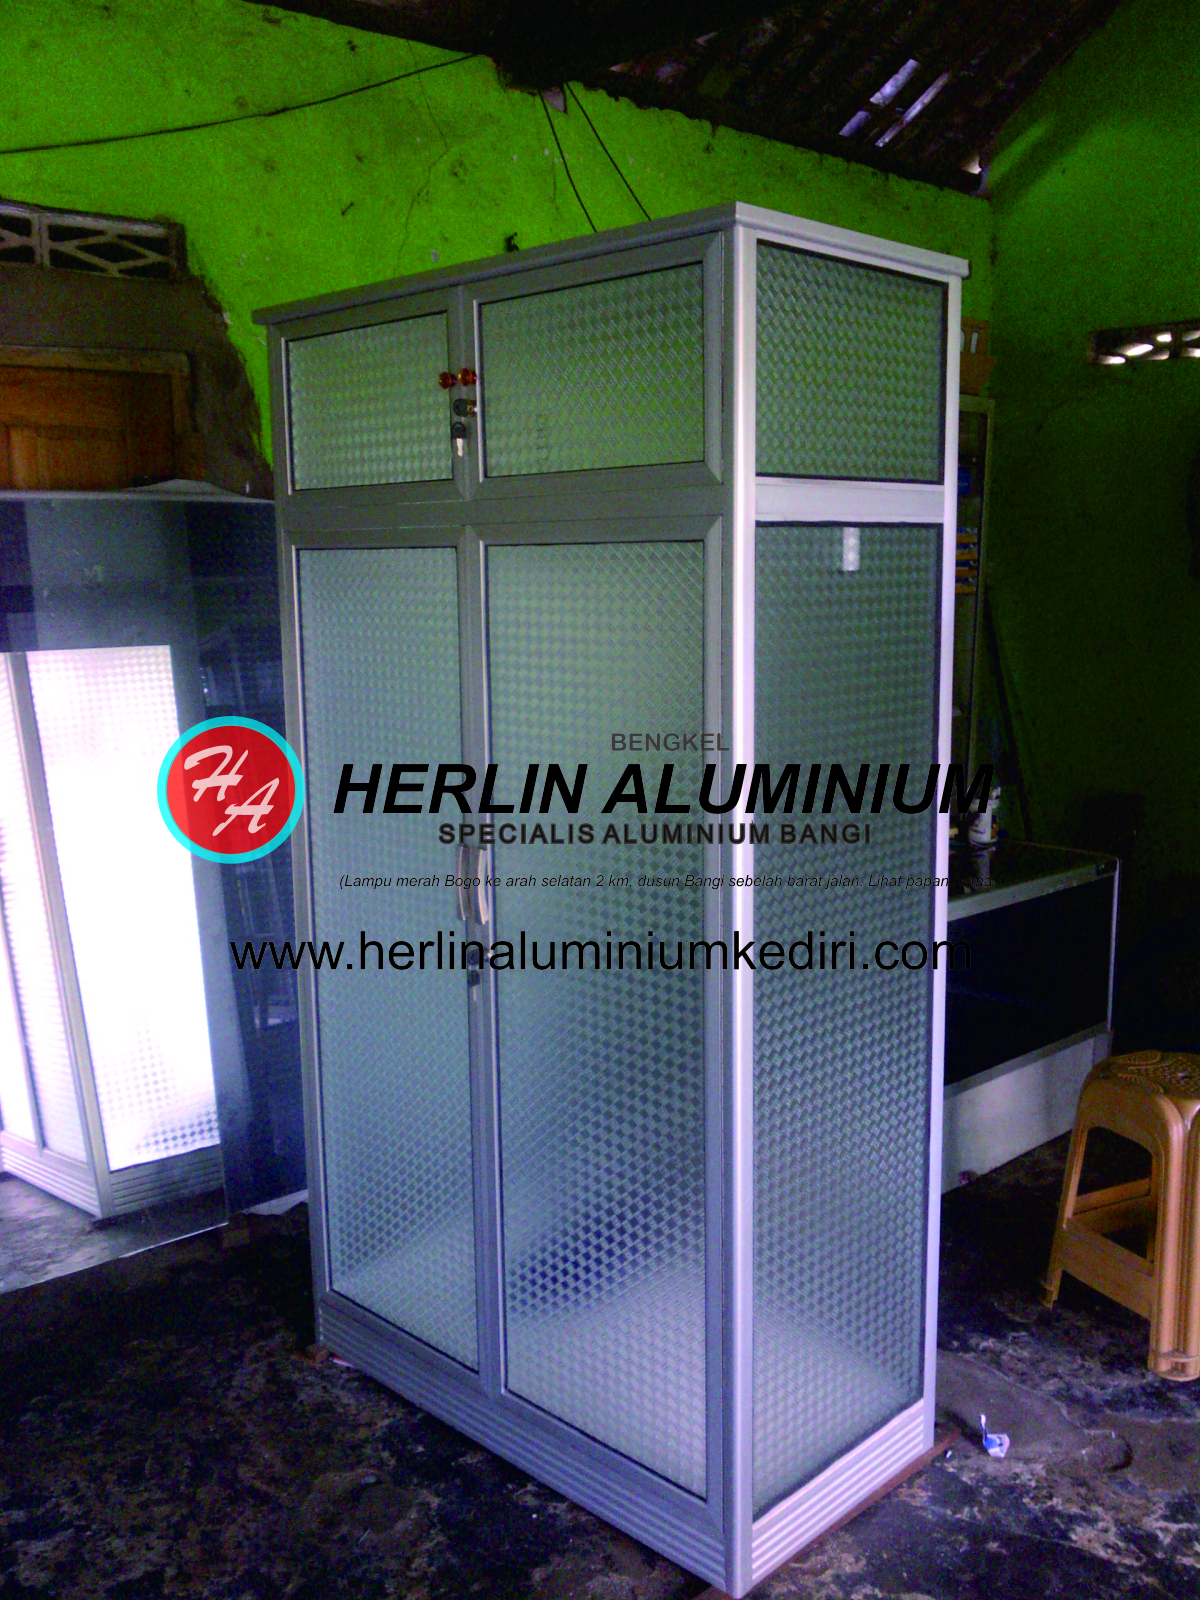 Daftar harga Lemari  Pakaian Aluminium  di Herlin Aluminium  